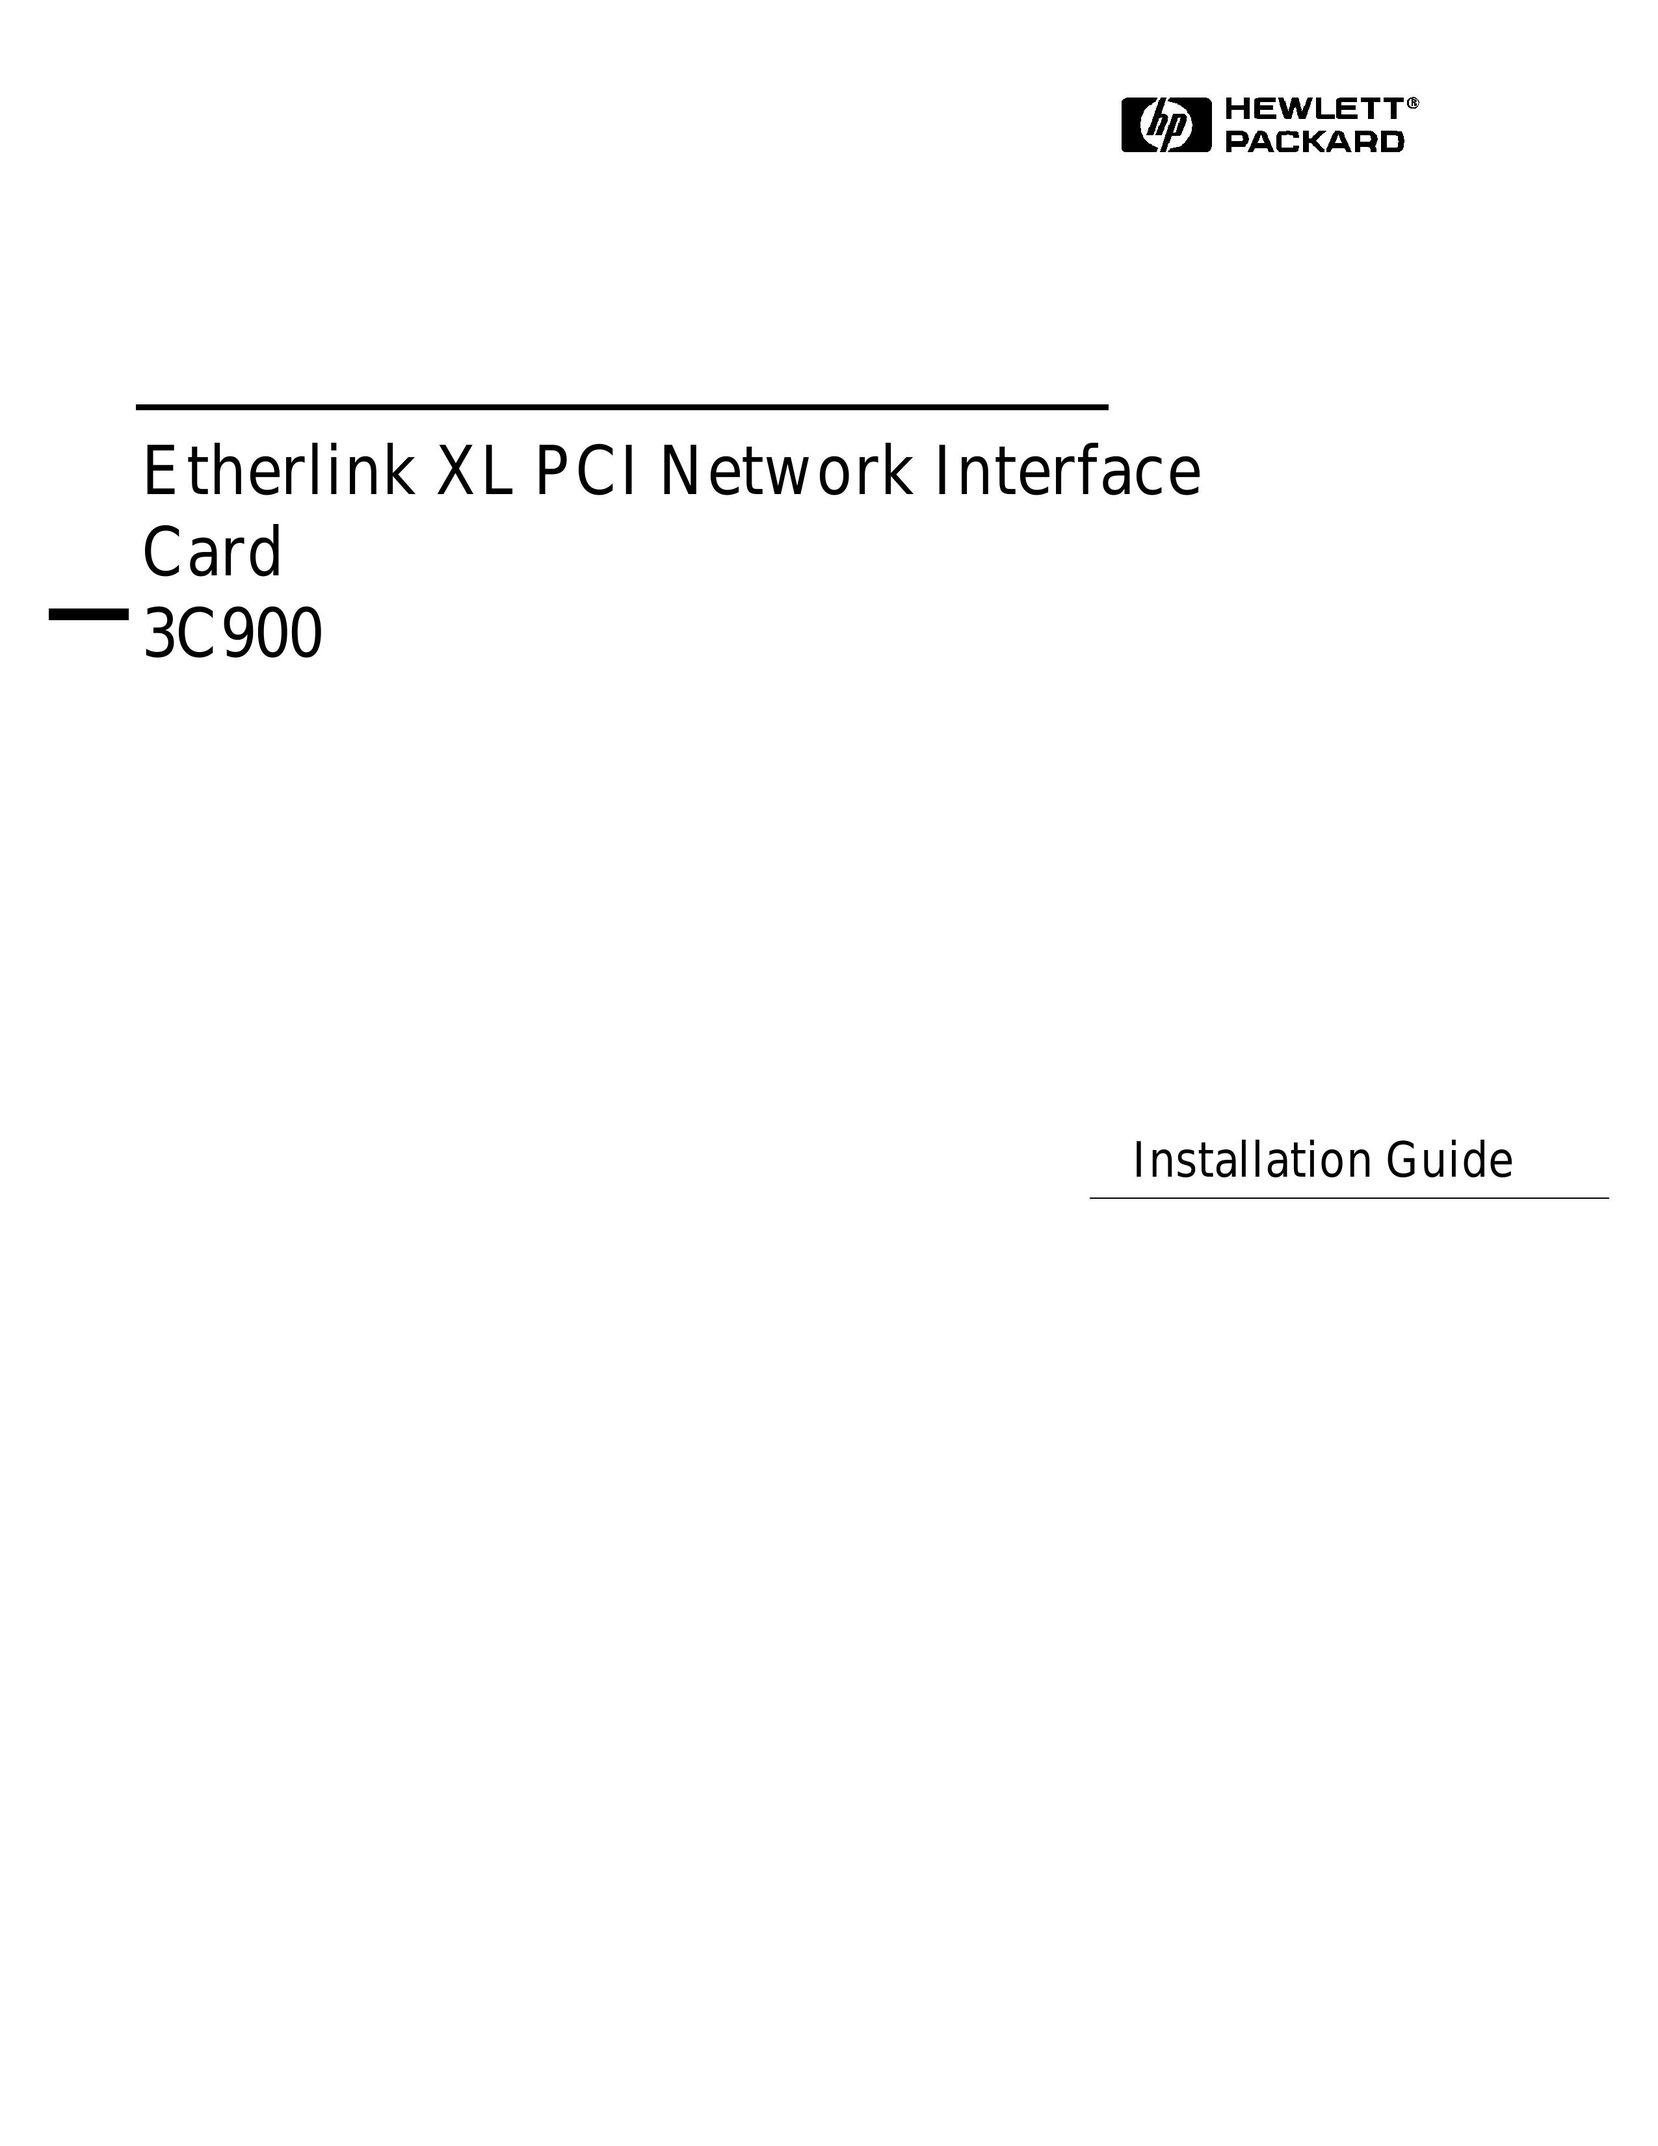 HP (Hewlett-Packard) 3C900 Network Card User Manual